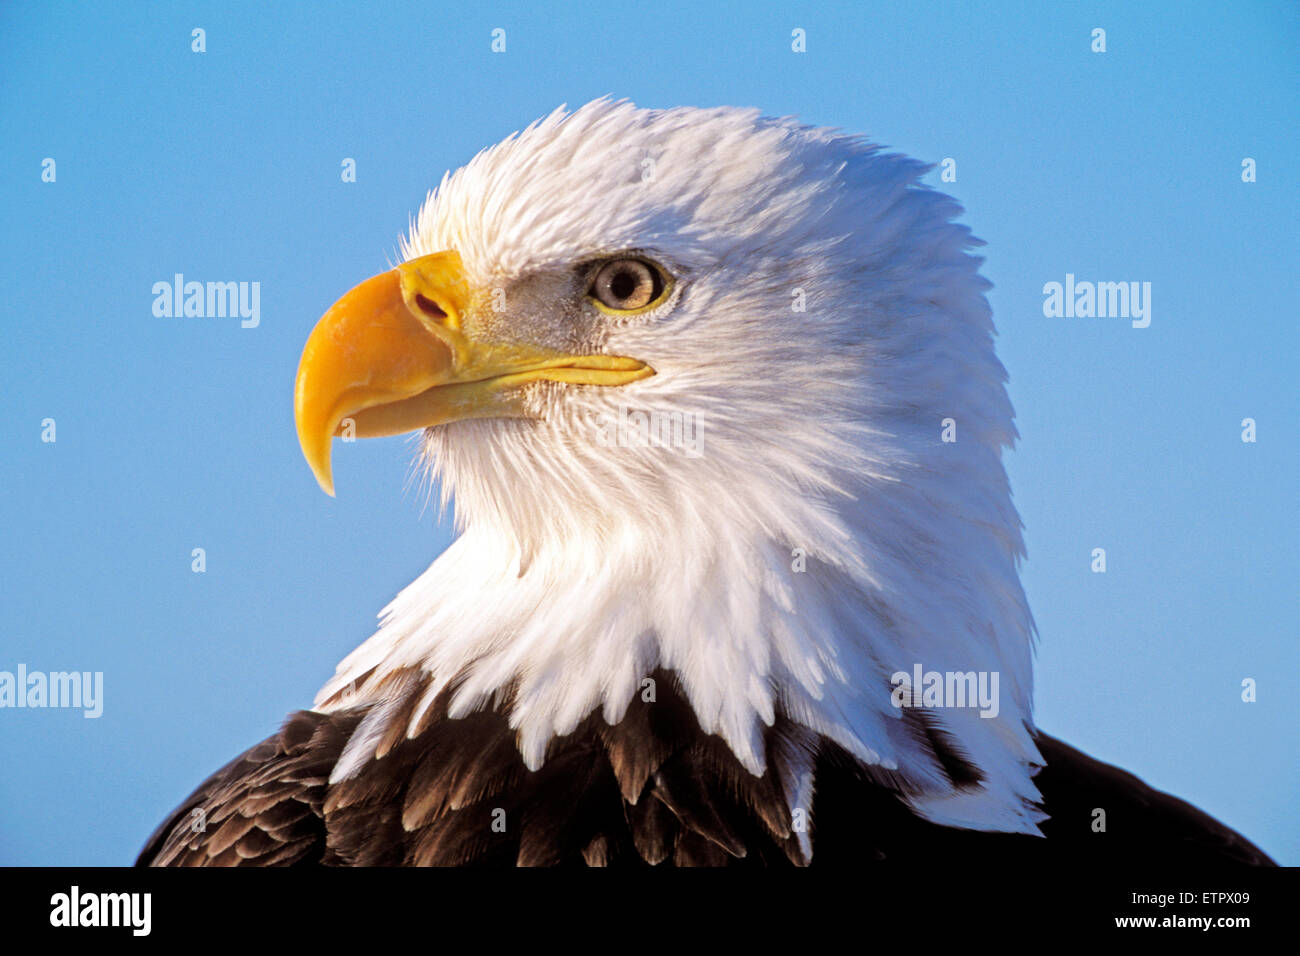 Tête de la tête mature Bald Eagle portrait gros plan ( Haliaeetus leucocephalus ) Banque D'Images